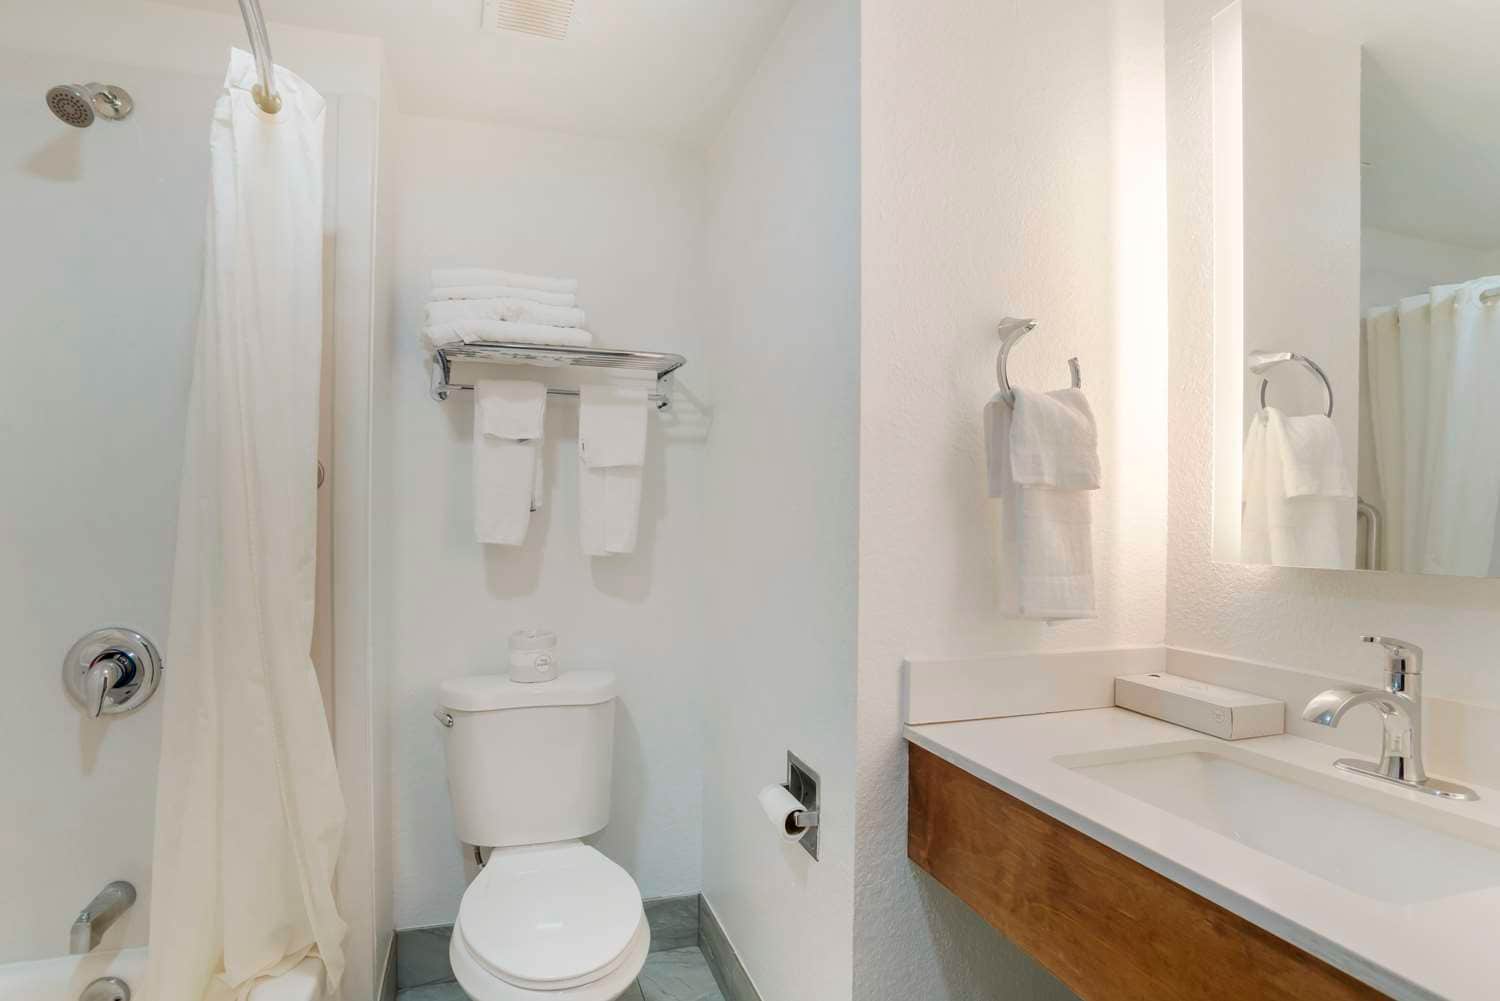 Parfum toilette WC – Fit Super-Humain